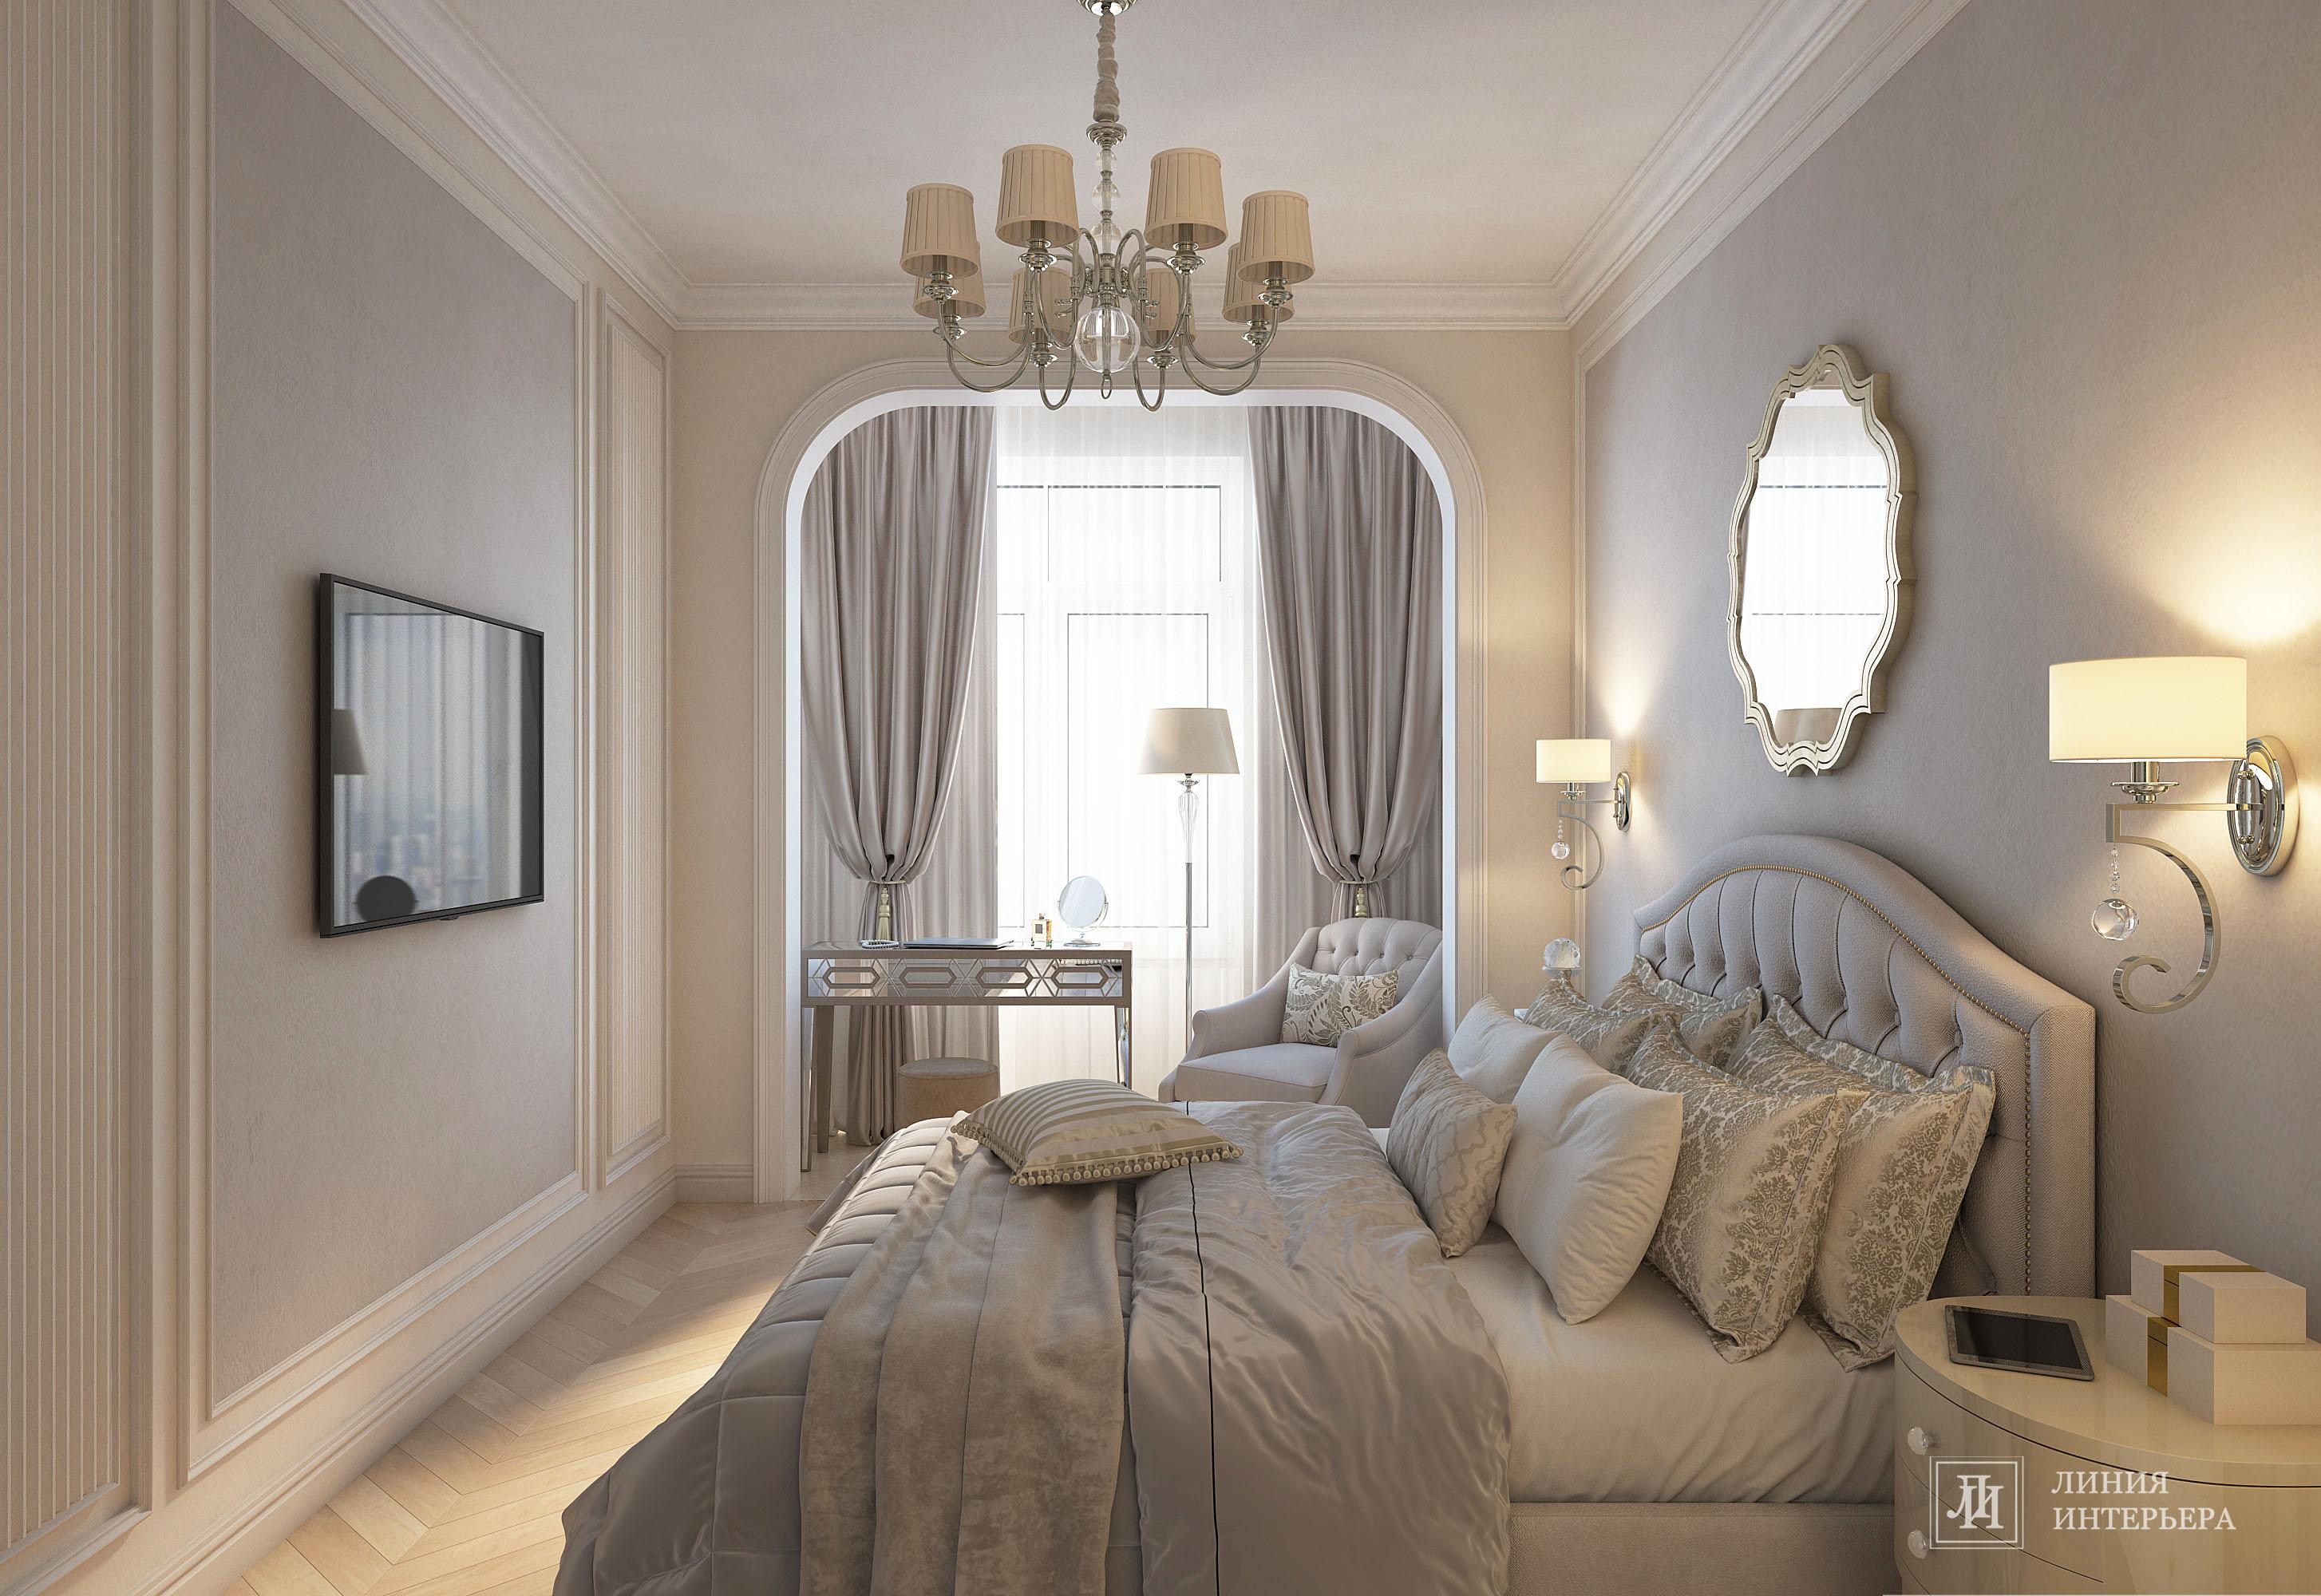 Интерьер спальни cветильниками над кроватью в неоклассике и в классическом стиле